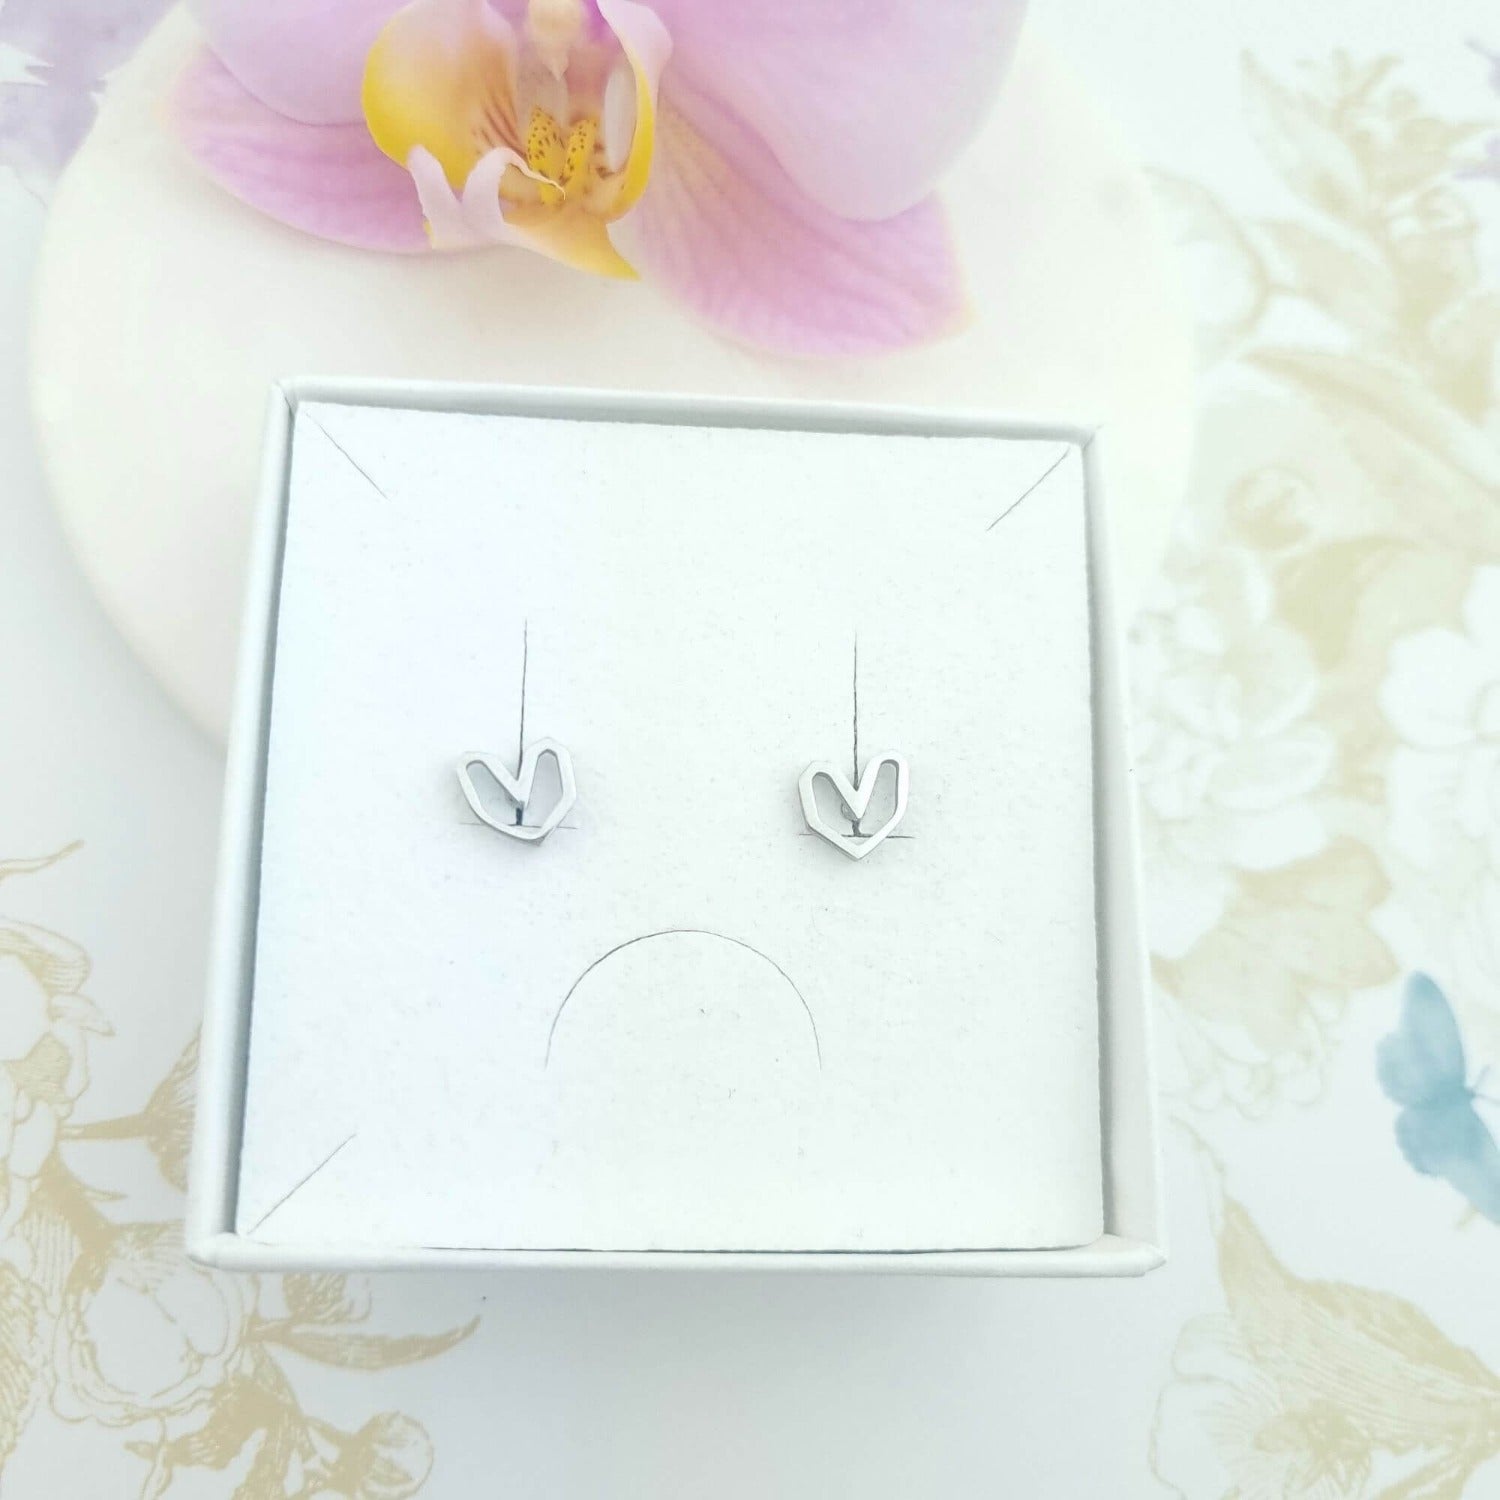 stud earrings in heart shape in a gift box